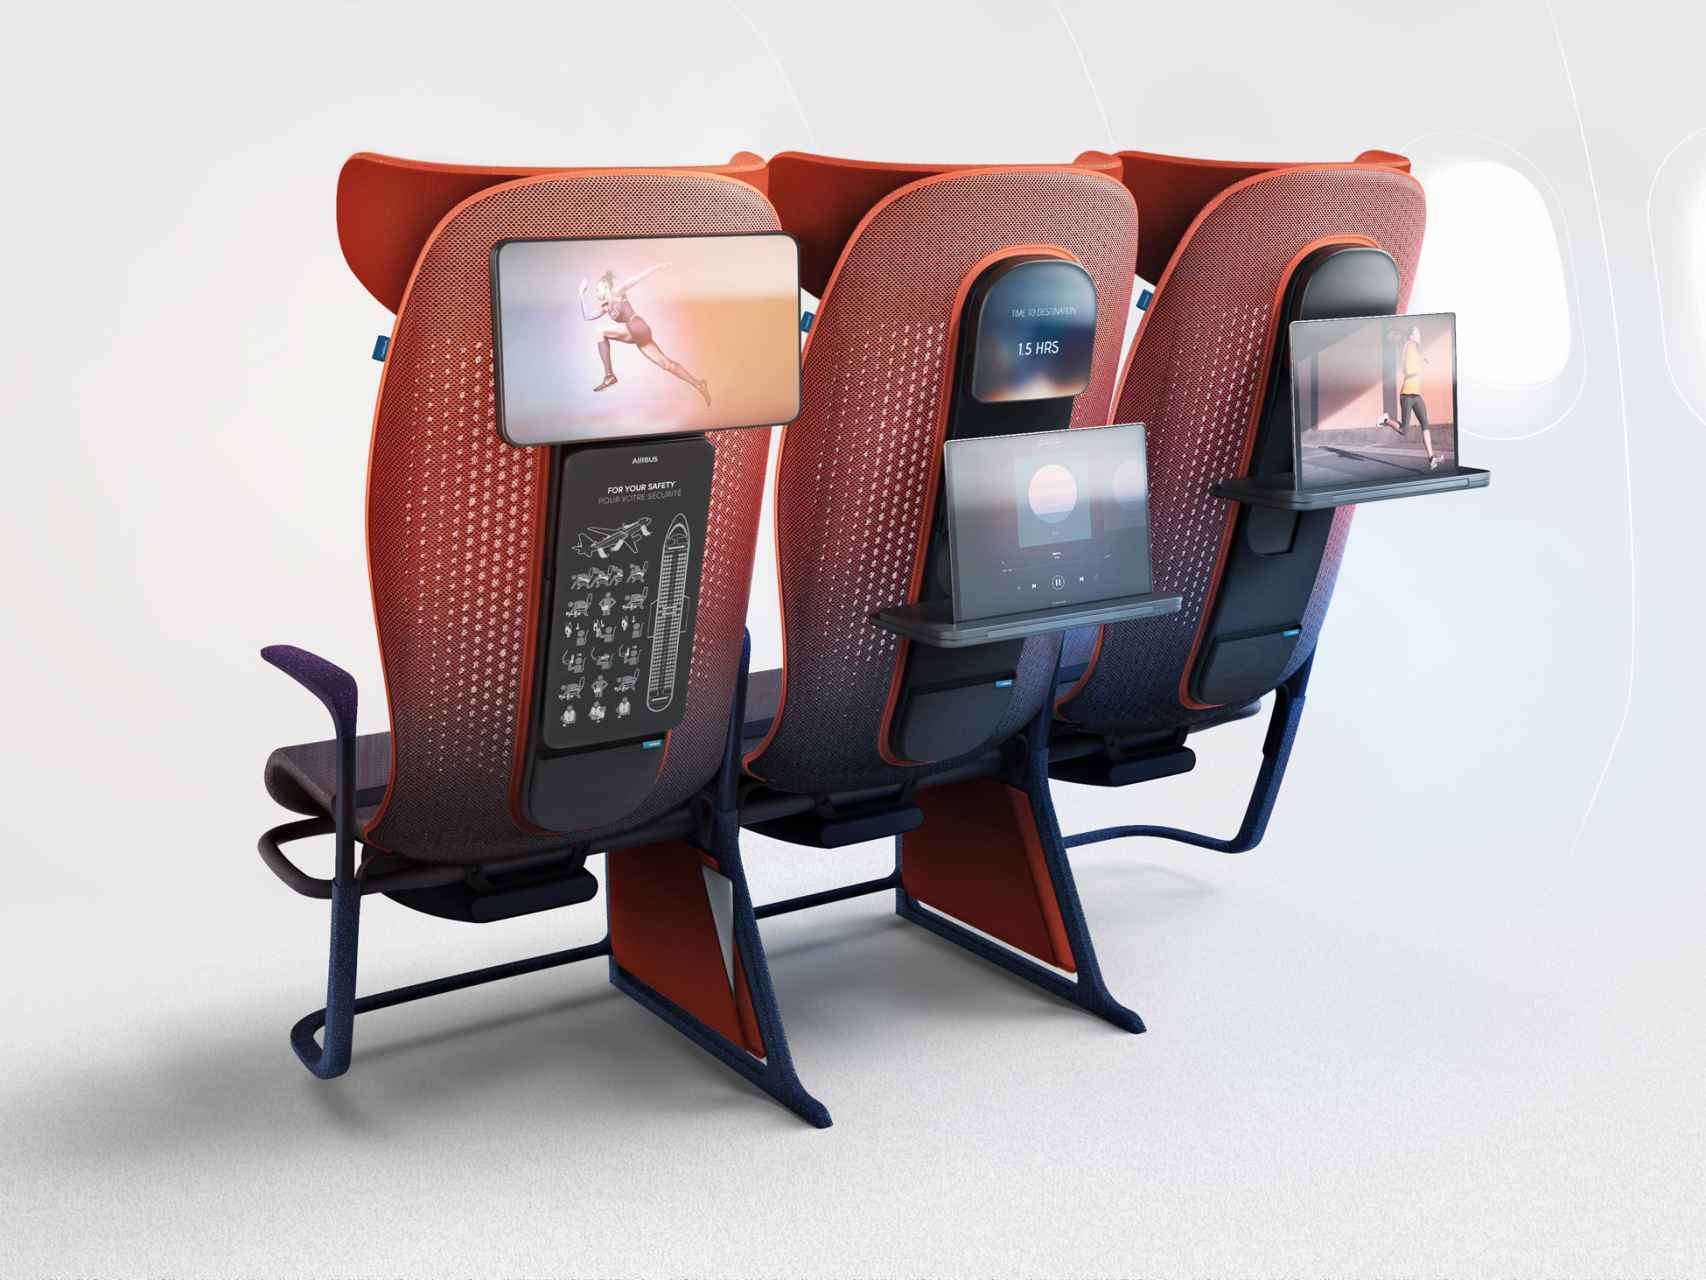 Diseño del nuevo asiento proyectado por Airbus y Layer.